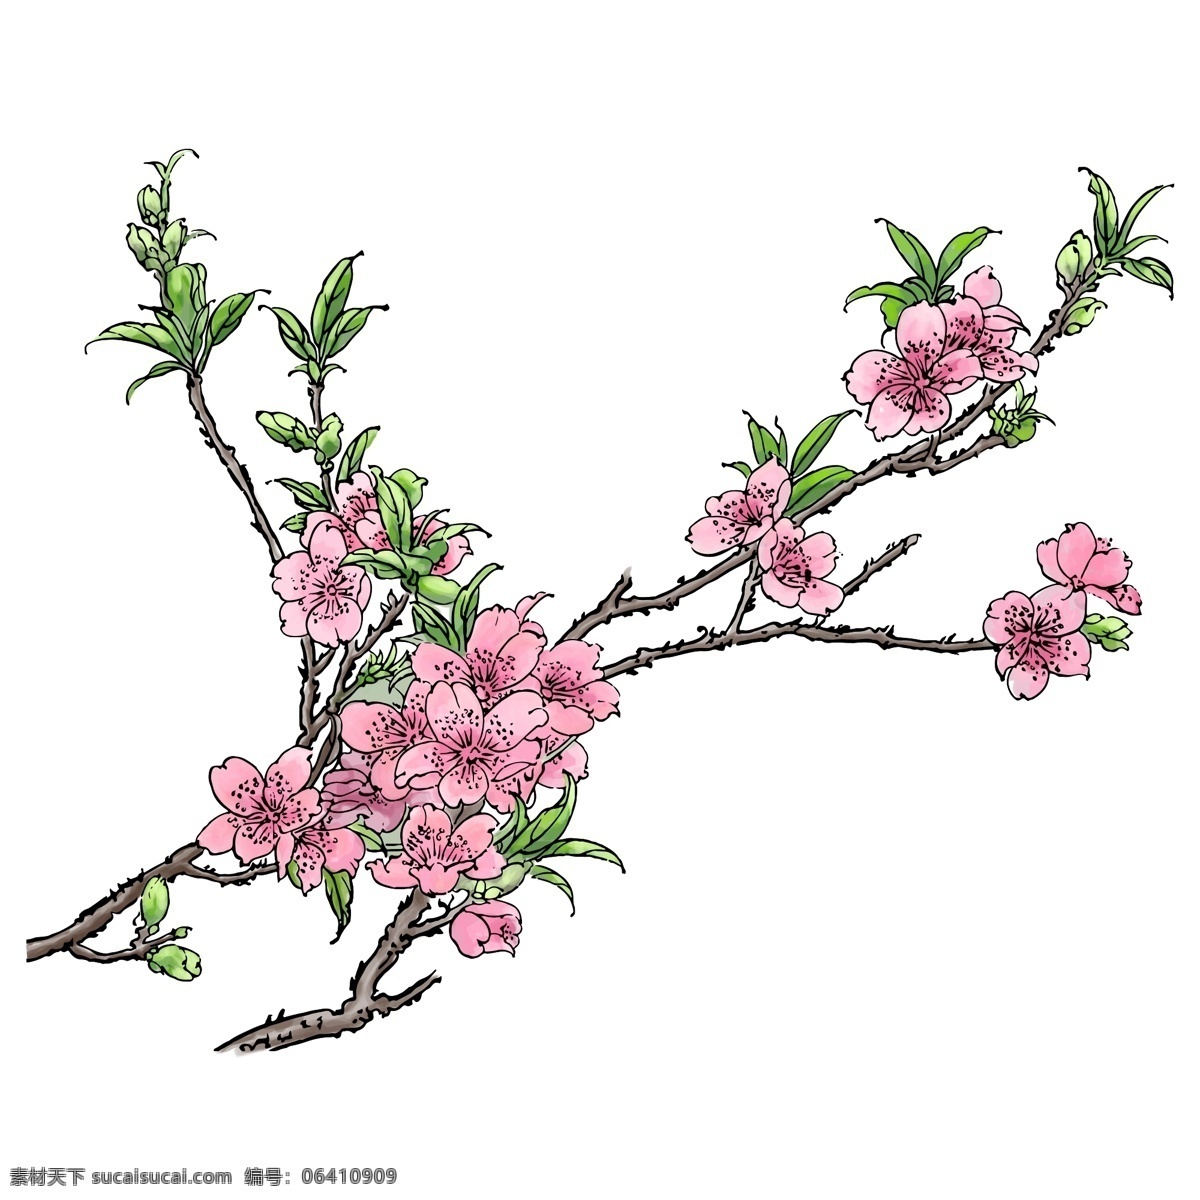 春天 粉色 手绘 水彩 风格 桃花 树枝 写实桃花 手绘风格 手绘桃花 水彩风格 粉色桃花 桃树 叶子 绿叶 花